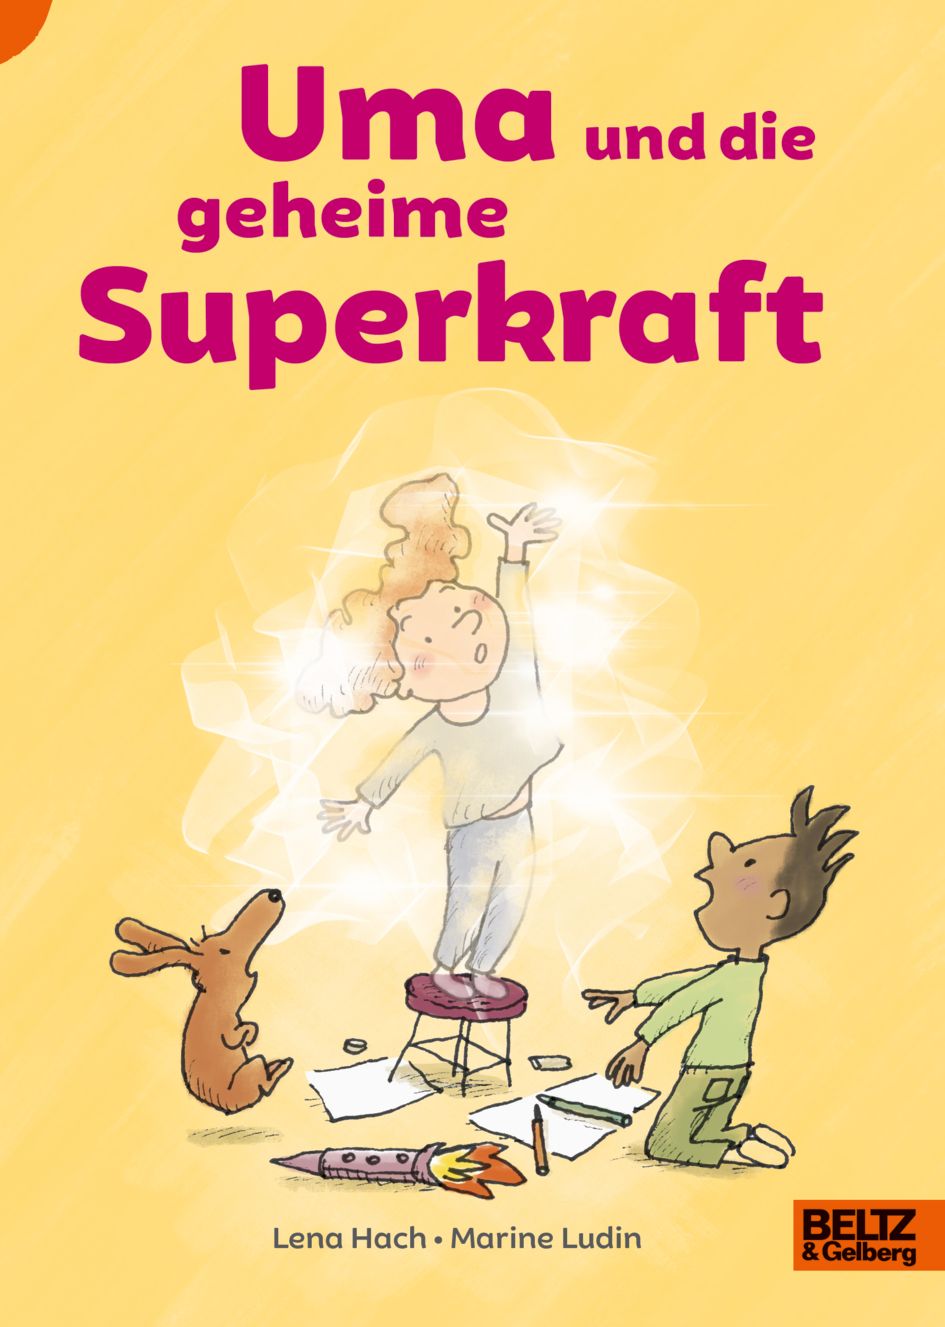 Buchcover "Uma und die geheime Superkraft", Beltz &Gelberg 